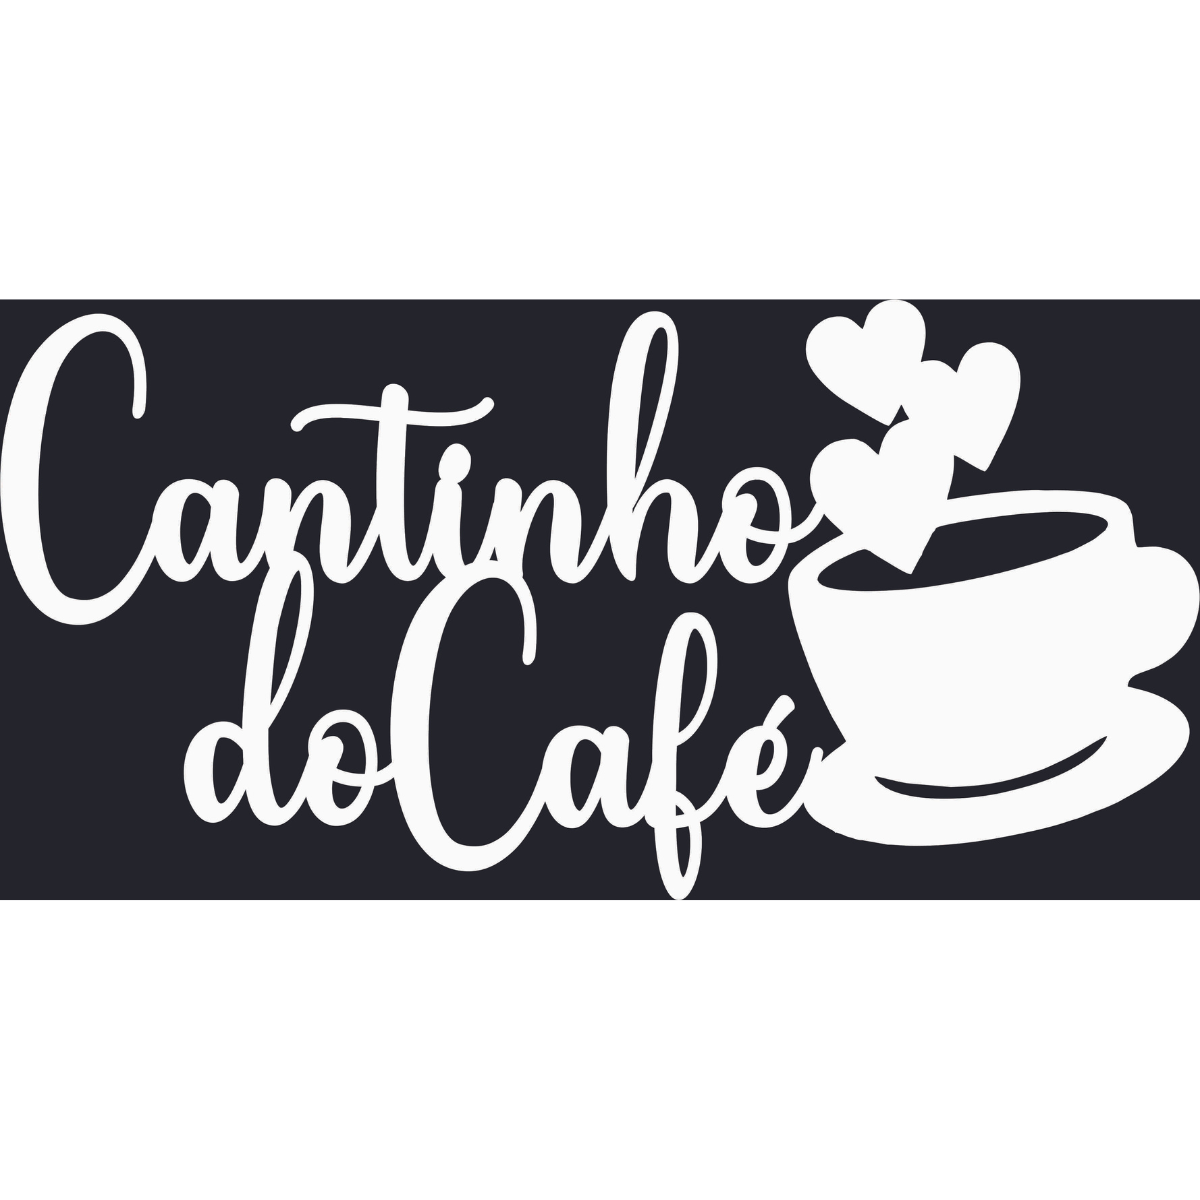 Cantinho do Cafe - Xícara - Decorativo - MDF - Branco - Plaquinha Buffet cozinha - 15x30cm - 1